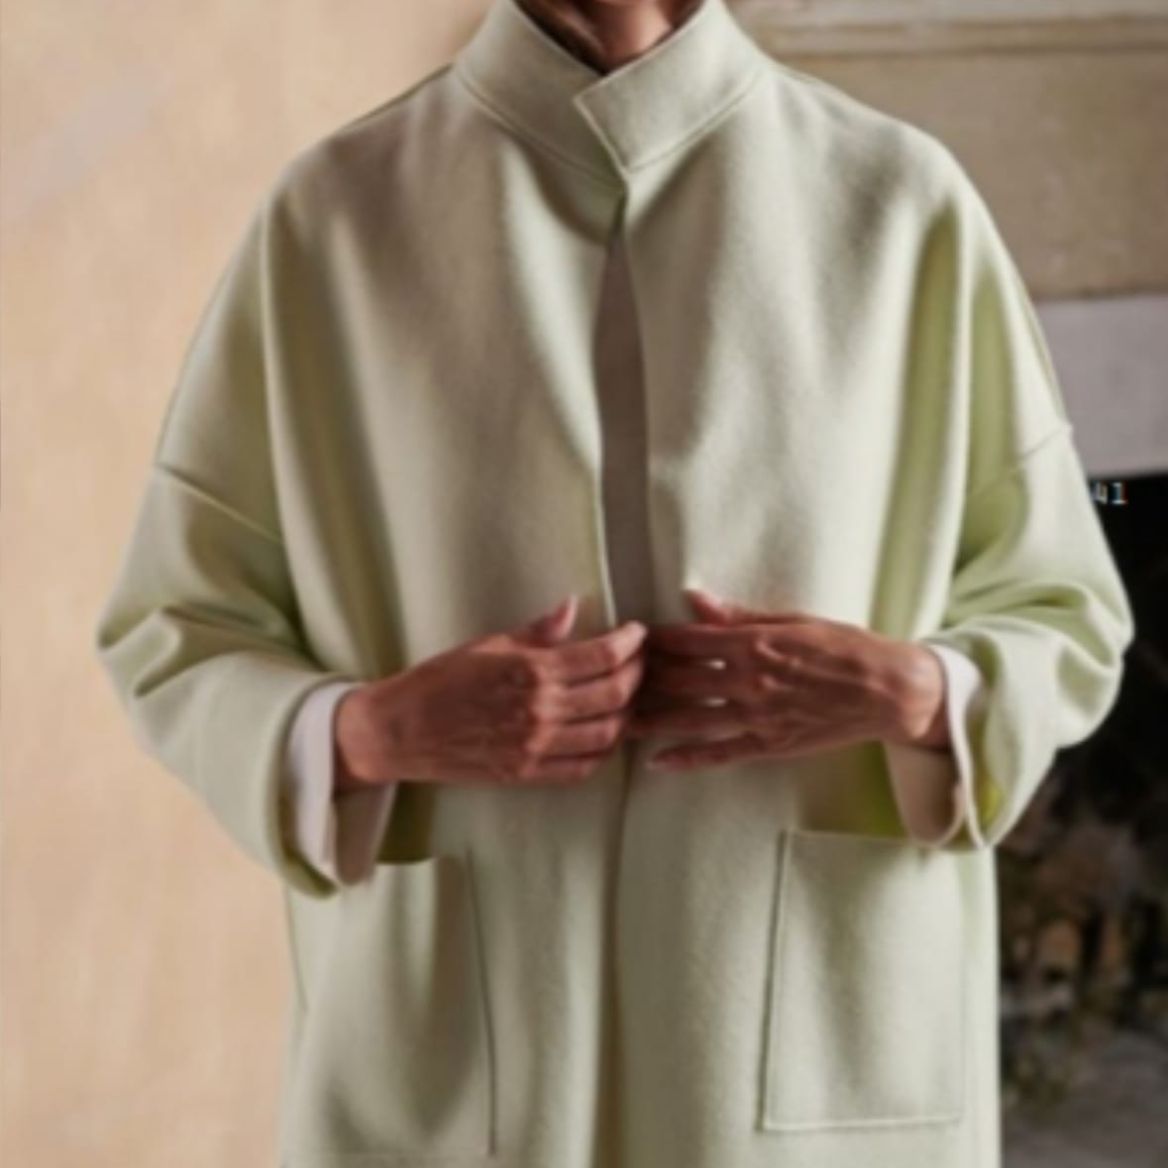 DONNA Les Boutiques - Coat knit cashmere